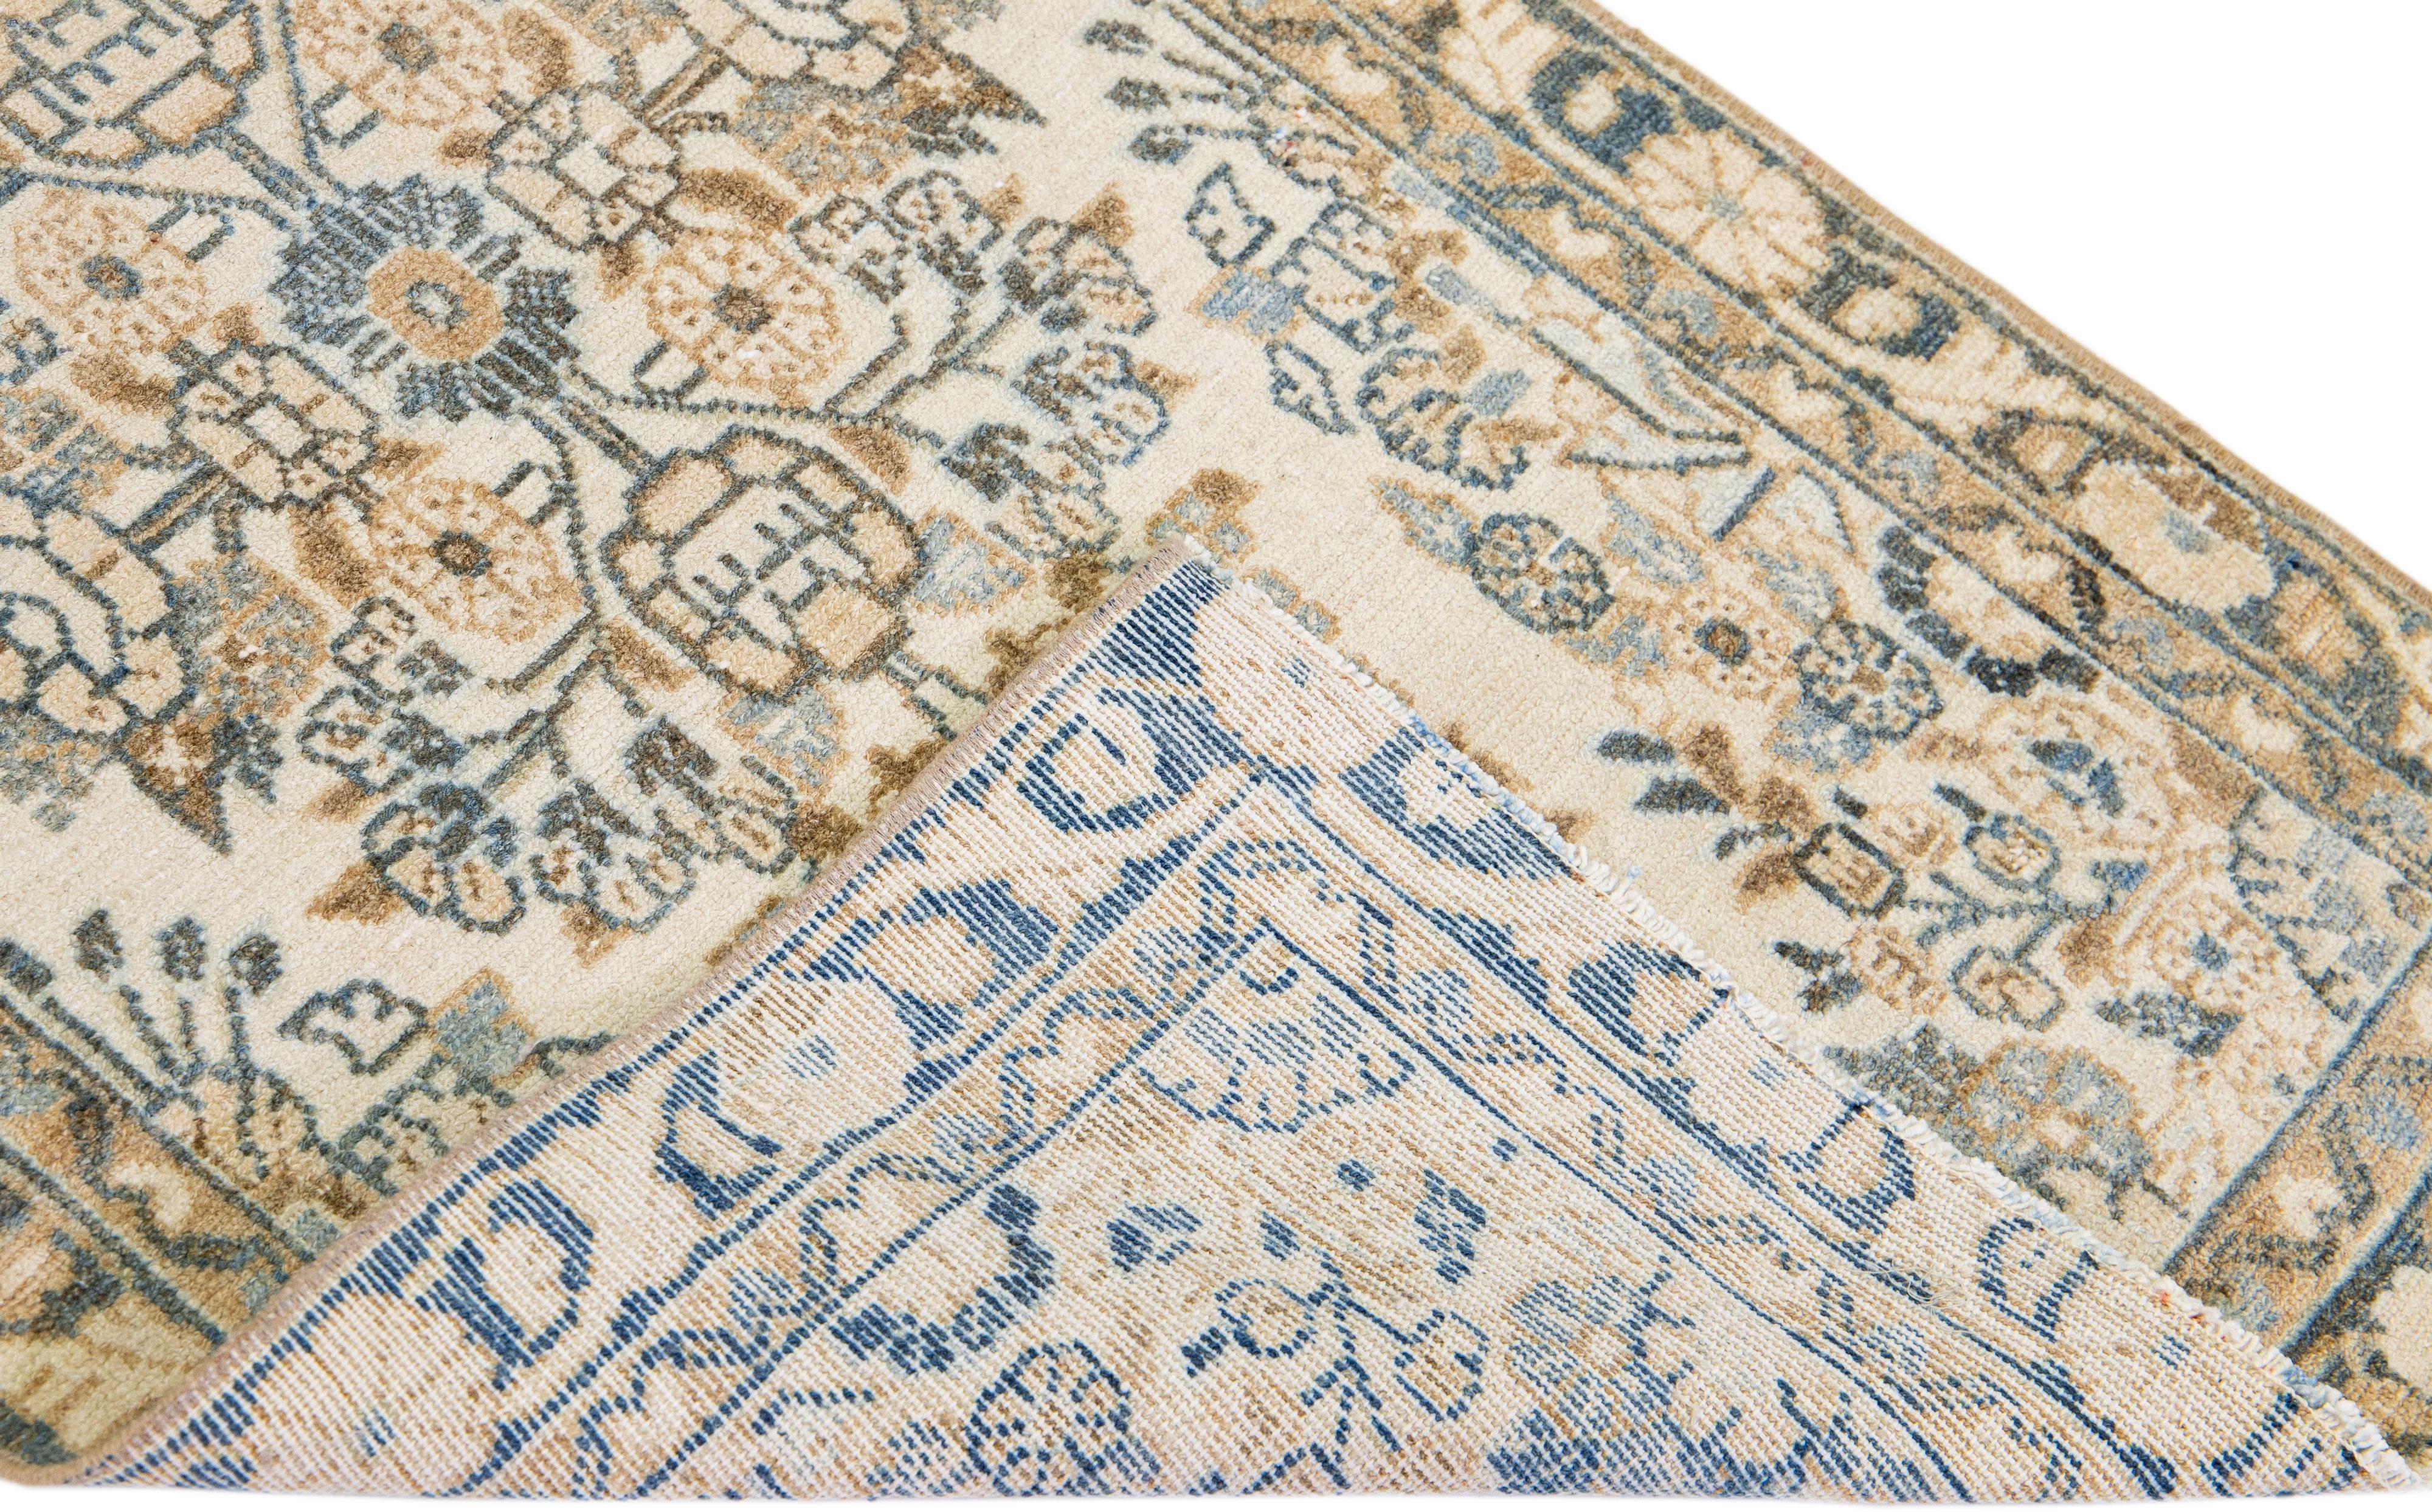 Magnifique tapis de couloir persan Heriz ancien en laine avec un champ beige et une bordure marron et des accents bleus dans un magnifique motif floral en médaillon sur toute sa surface.

Ce tapis mesure 2'4